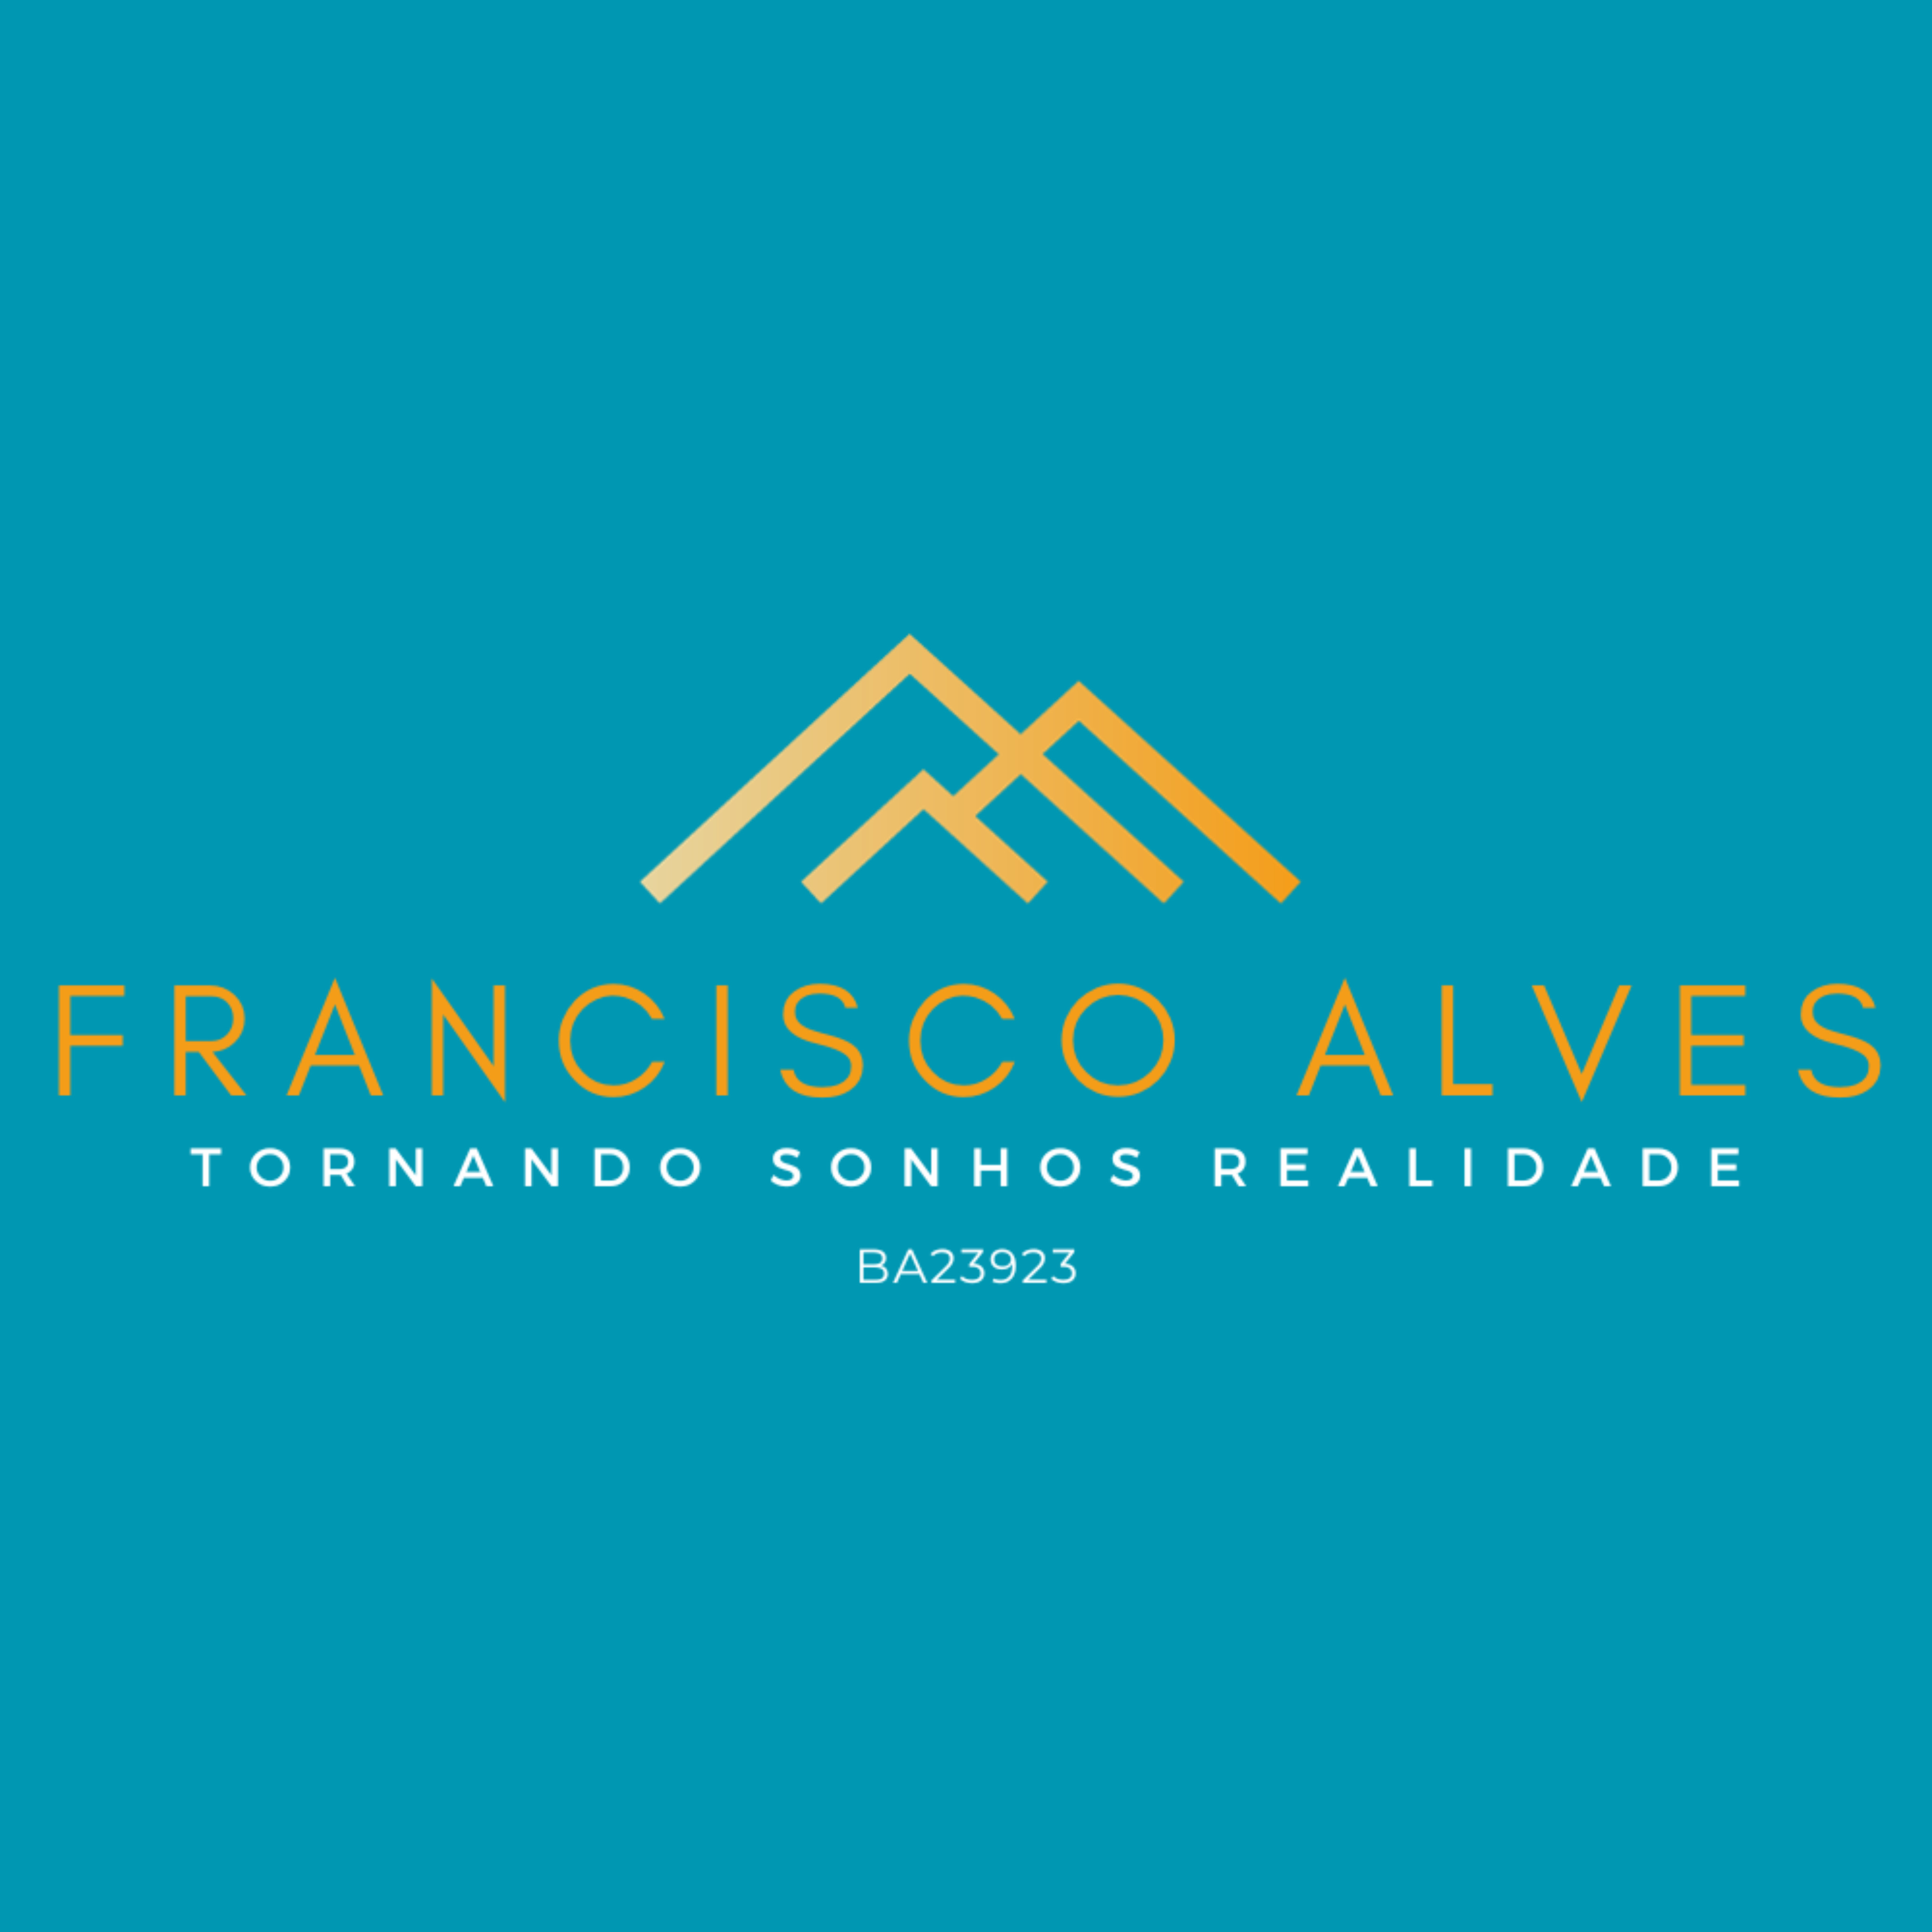 Francisco Alves Corretor - Realizando sonhos https://franciscoalvescorretor.com.br/